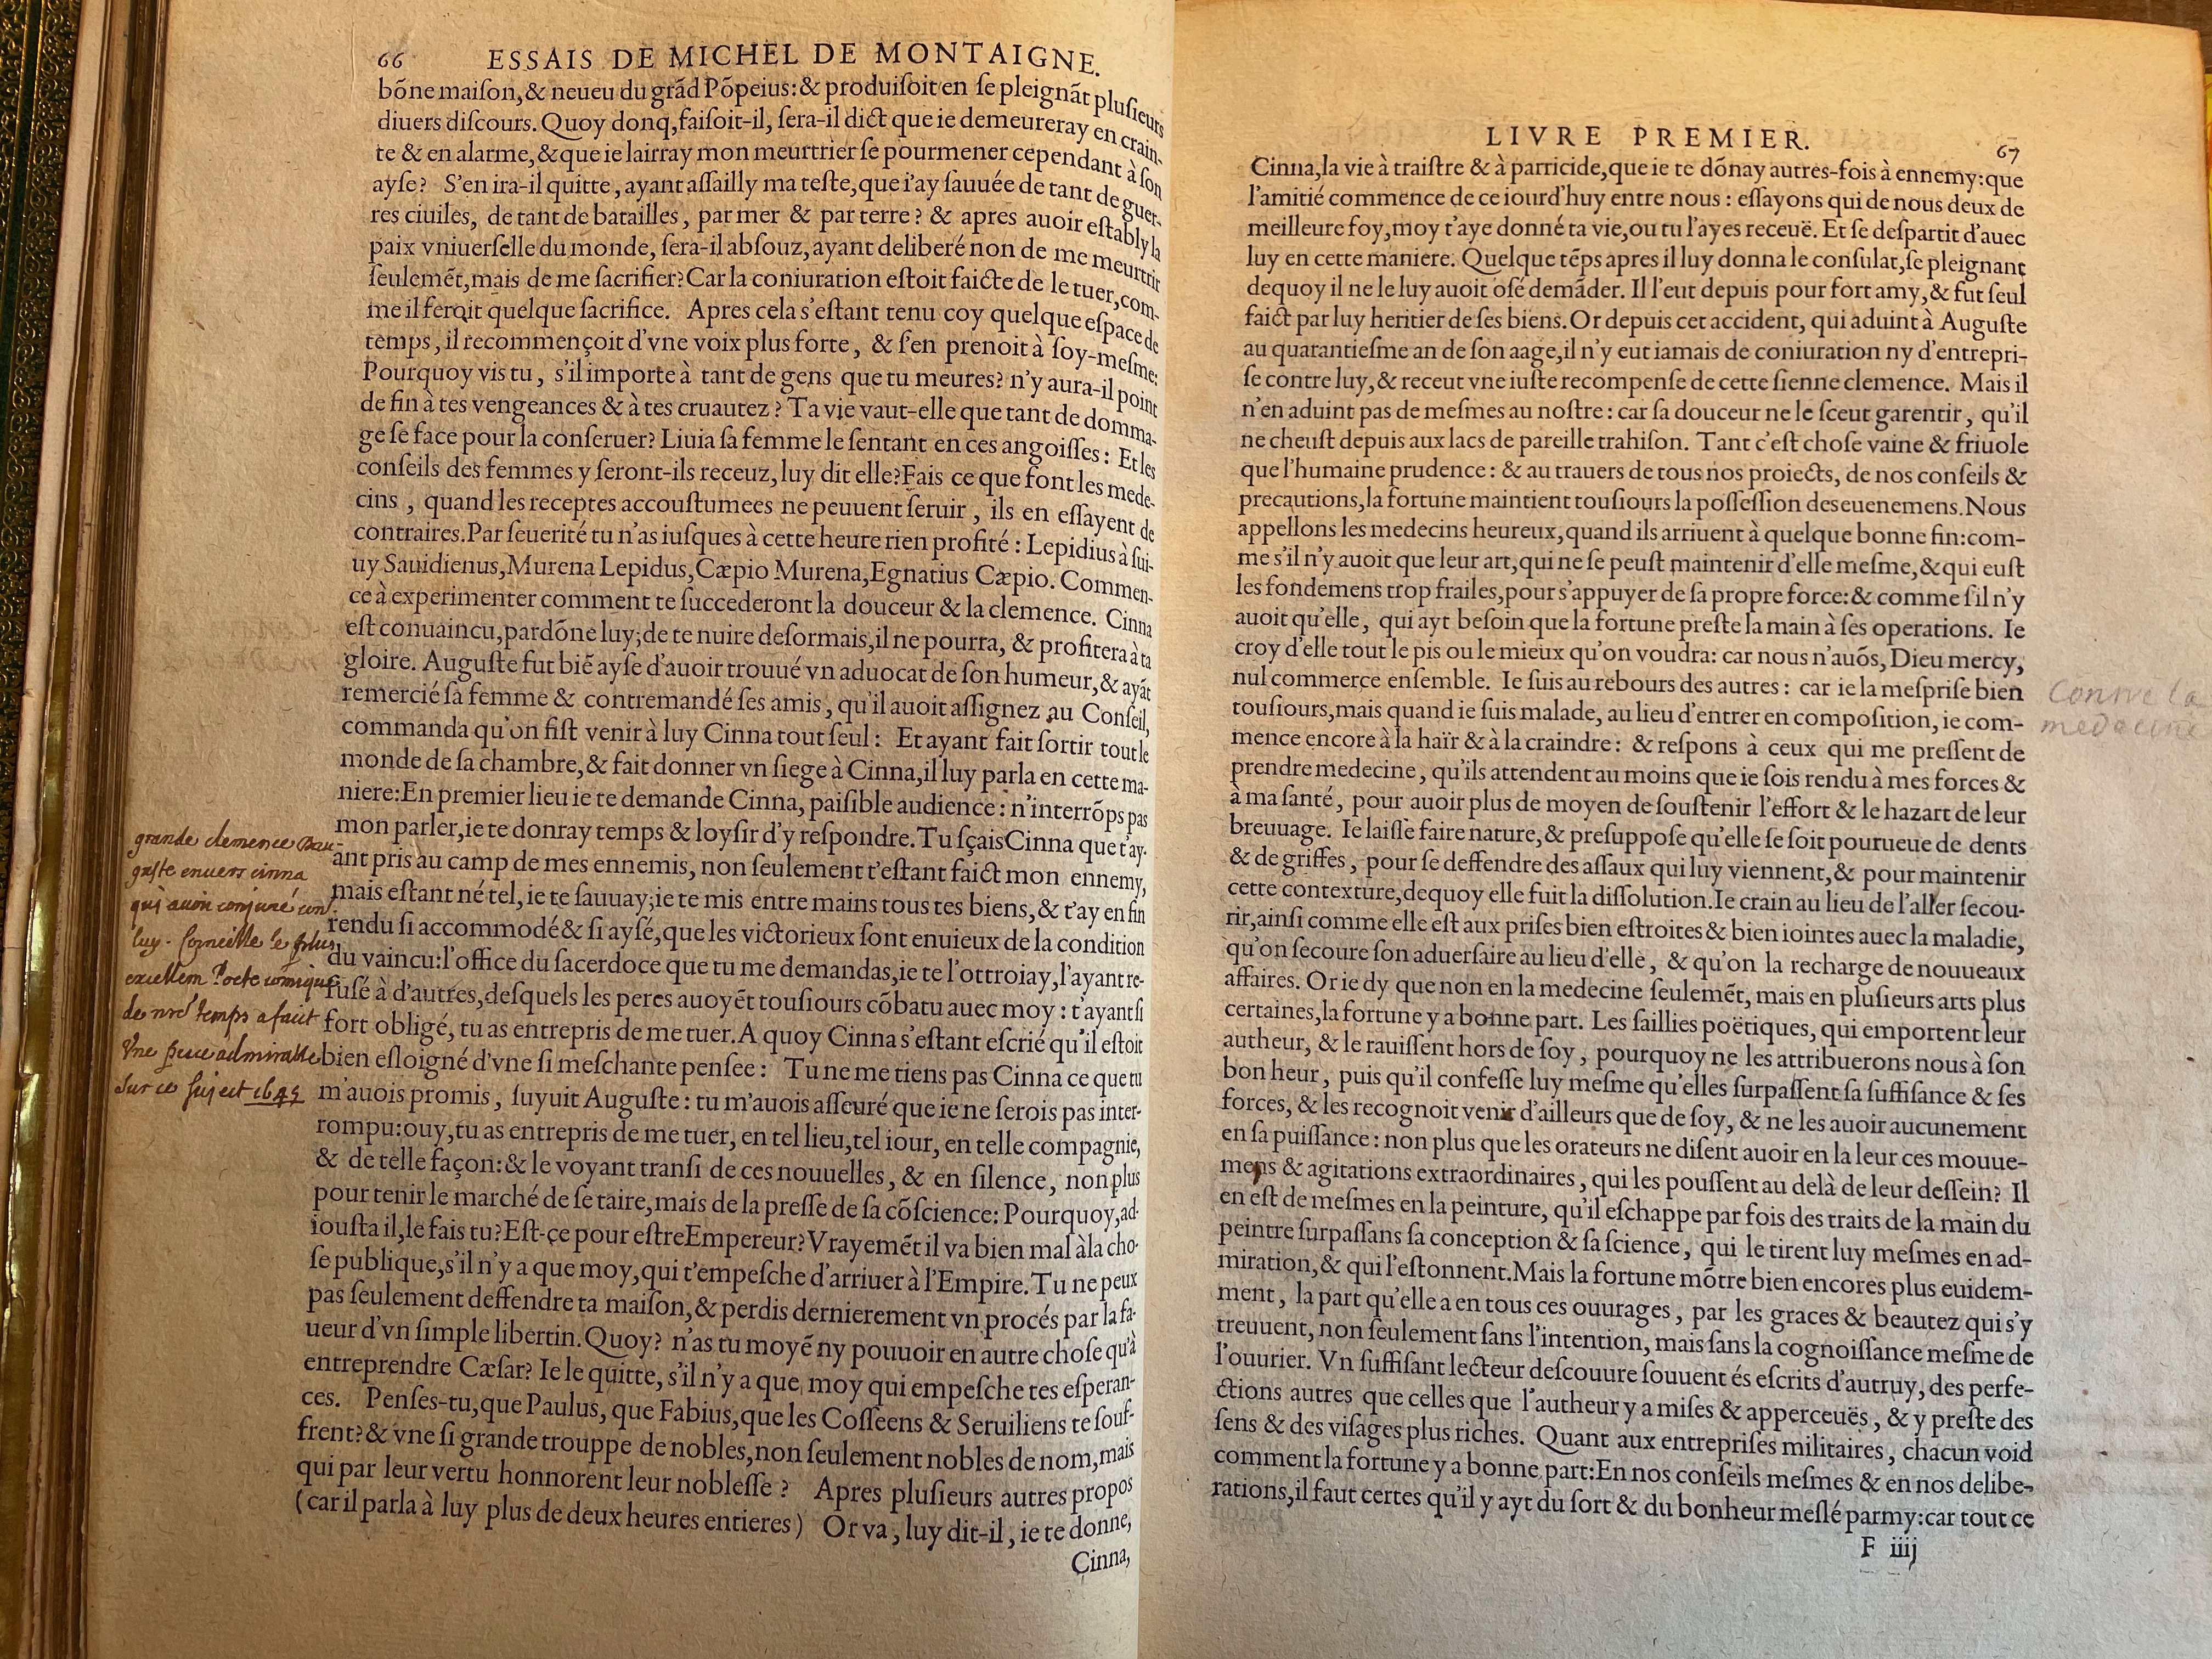 5. - p. 66-67, Livre I. Les Essais, 1595. Exemplaire Laval.